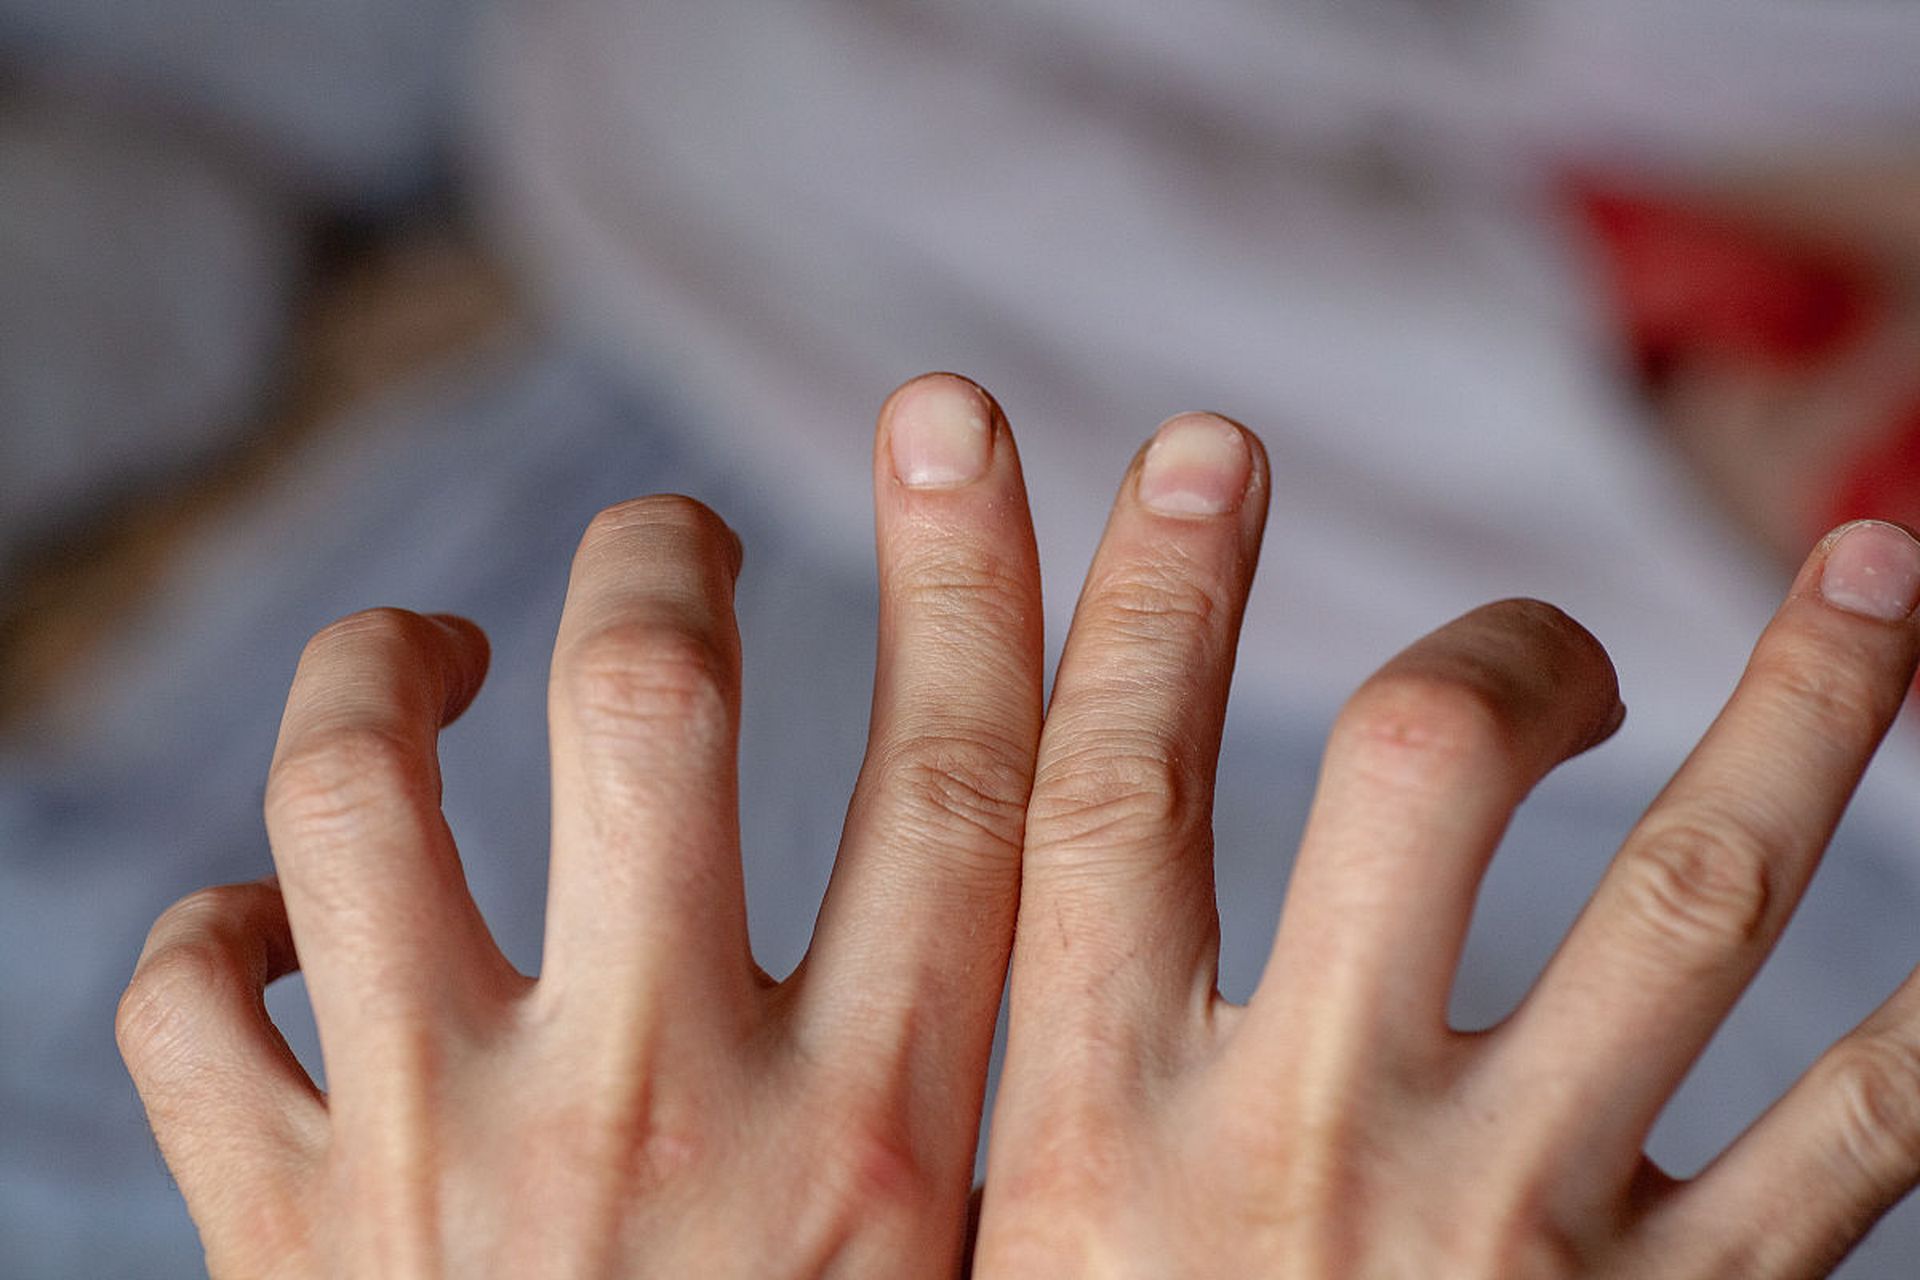 多指畸形是手指数量异常增多的畸形之一,其成因和治疗方法值得我们